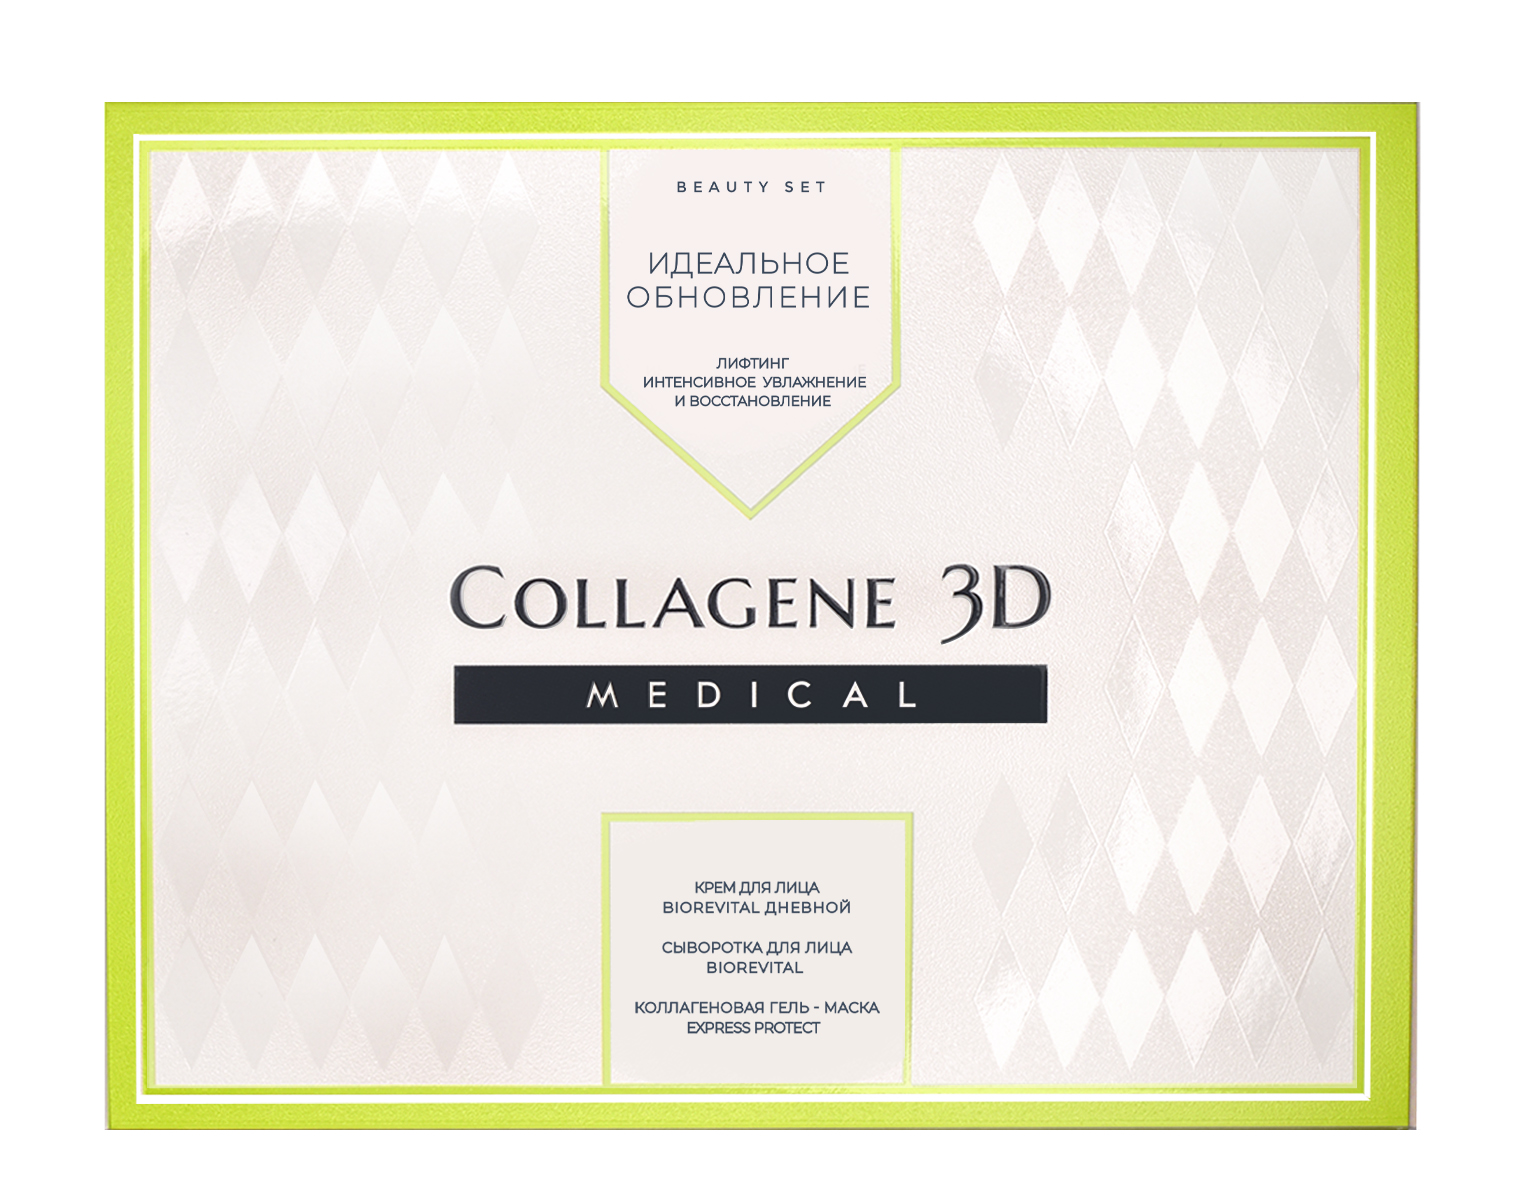 Collagene 3D Набор подарочный Идеальное Обновление: Сыворотка для лица BioRevital 30 мл + Коллаген 3Д Крем для лица BioRevital Дневной 30 мл + Гель-маска Exspress Protect с софорой японской 30 мл (Collagene 3D, BioRevital)